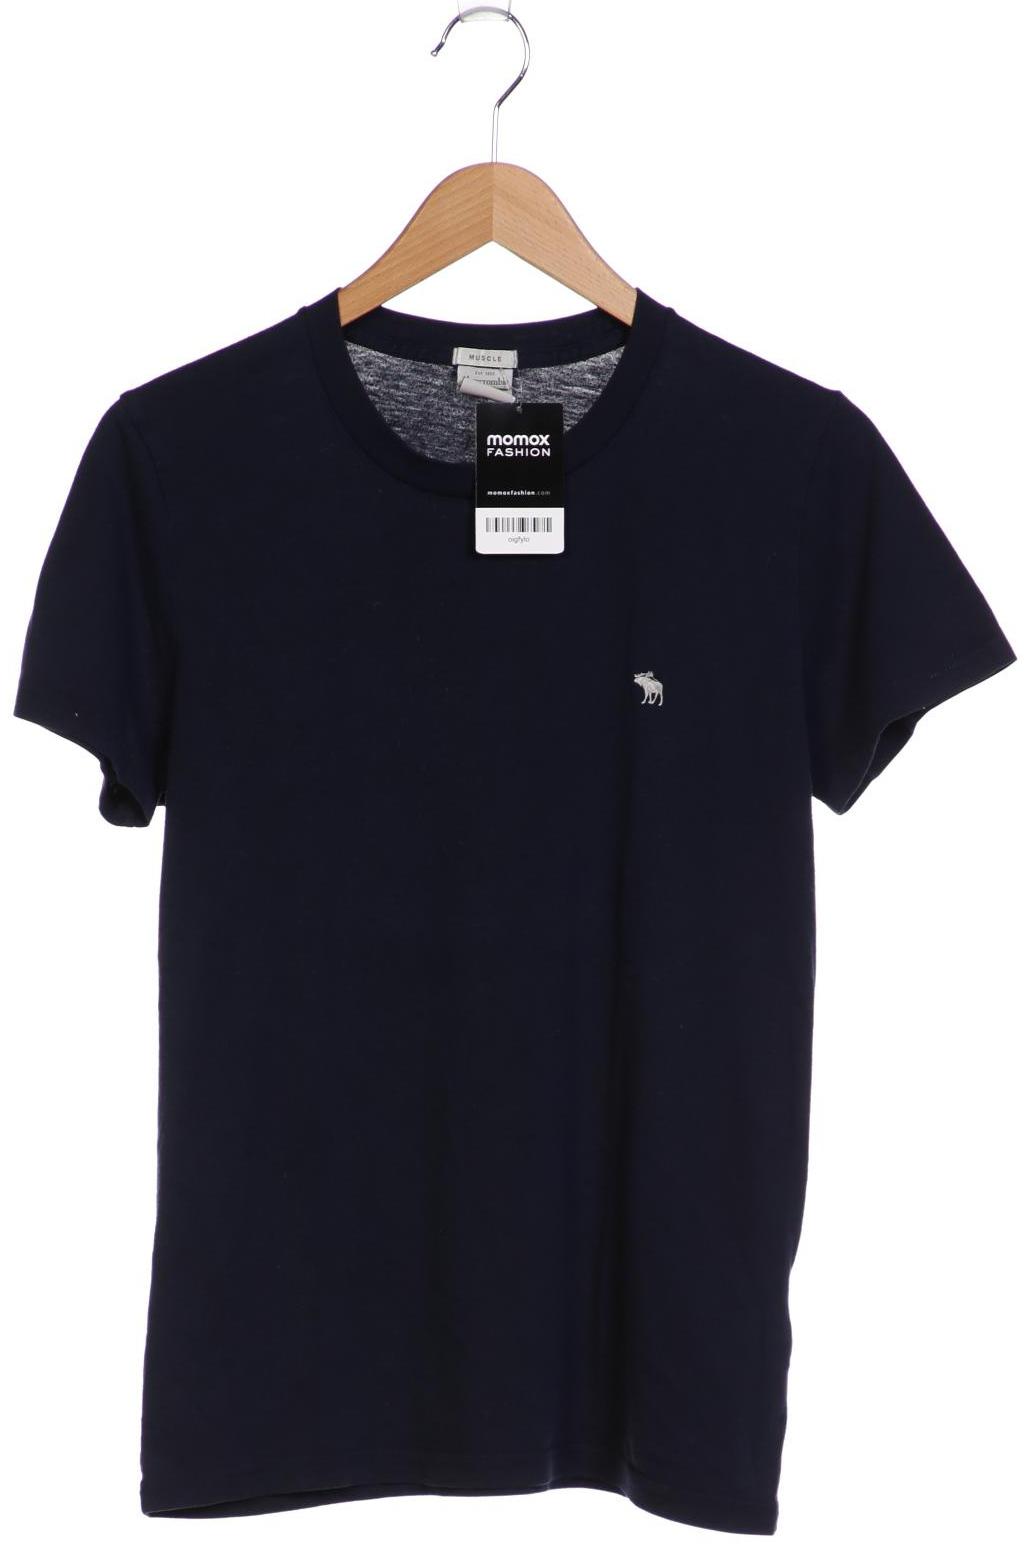 Abercrombie & Fitch Herren T-Shirt, marineblau, Gr. 48 von Abercrombie & Fitch